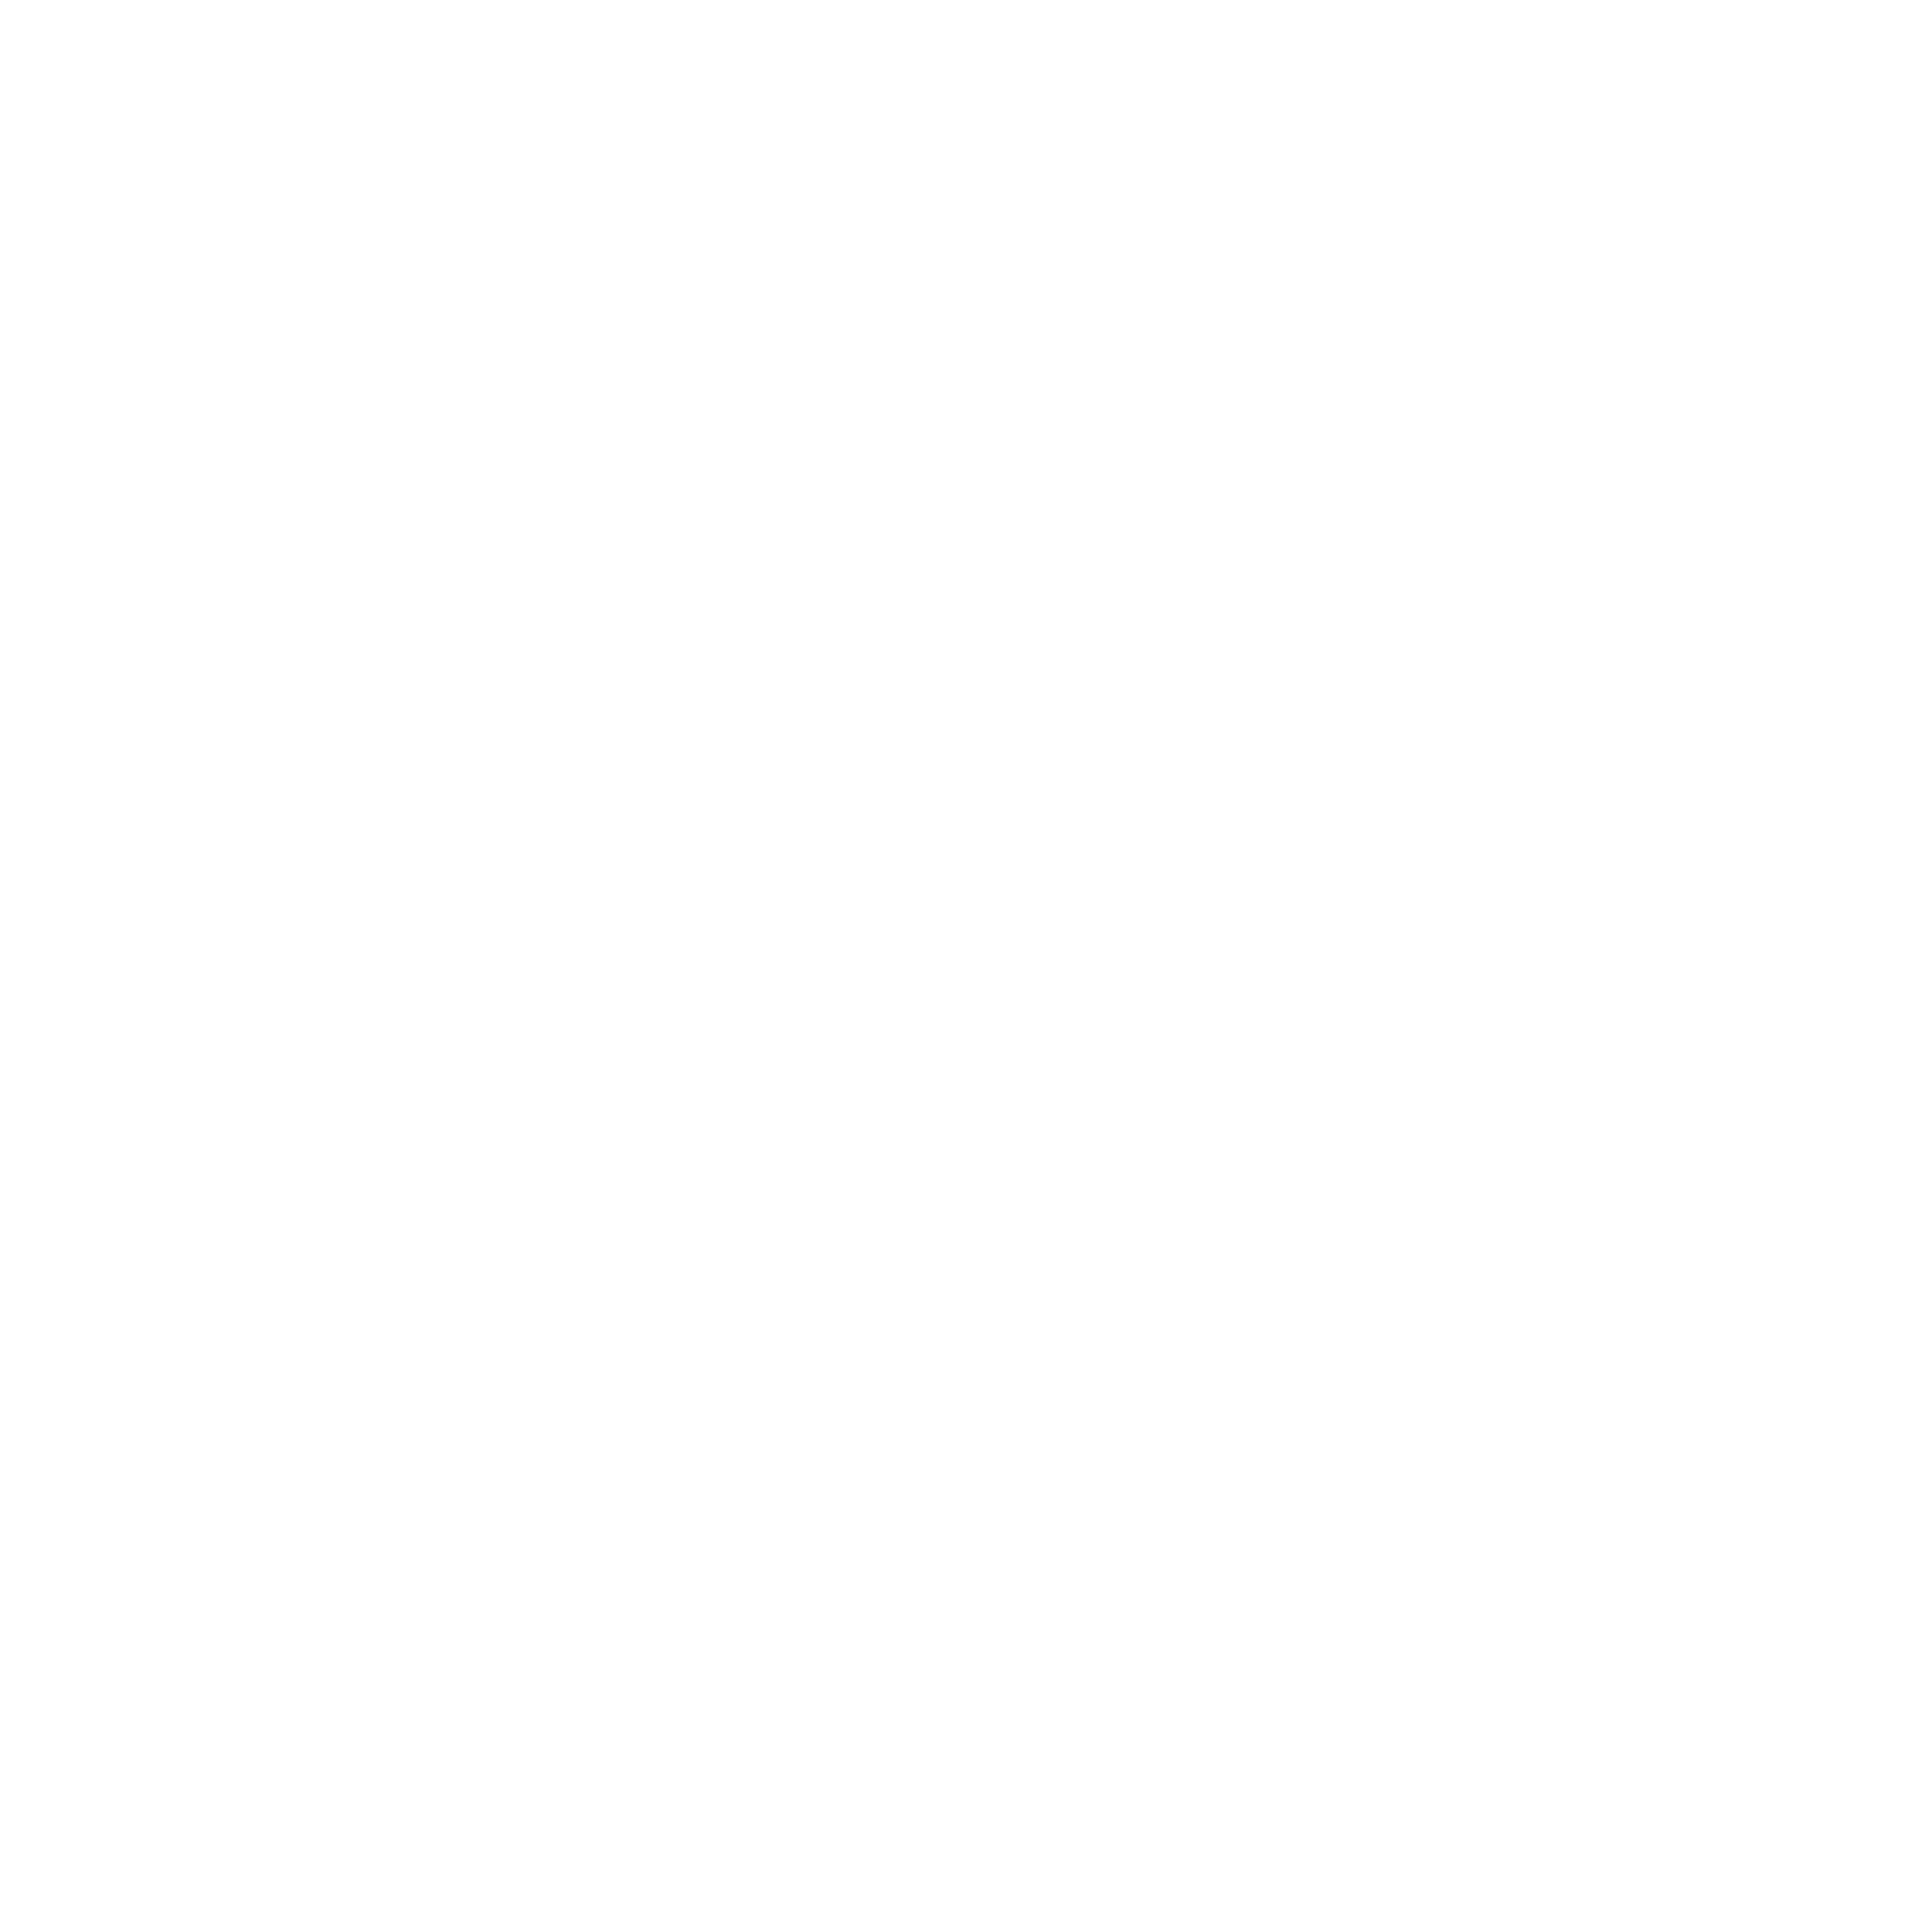 Icono de llamada a versión chapbook de Robinson